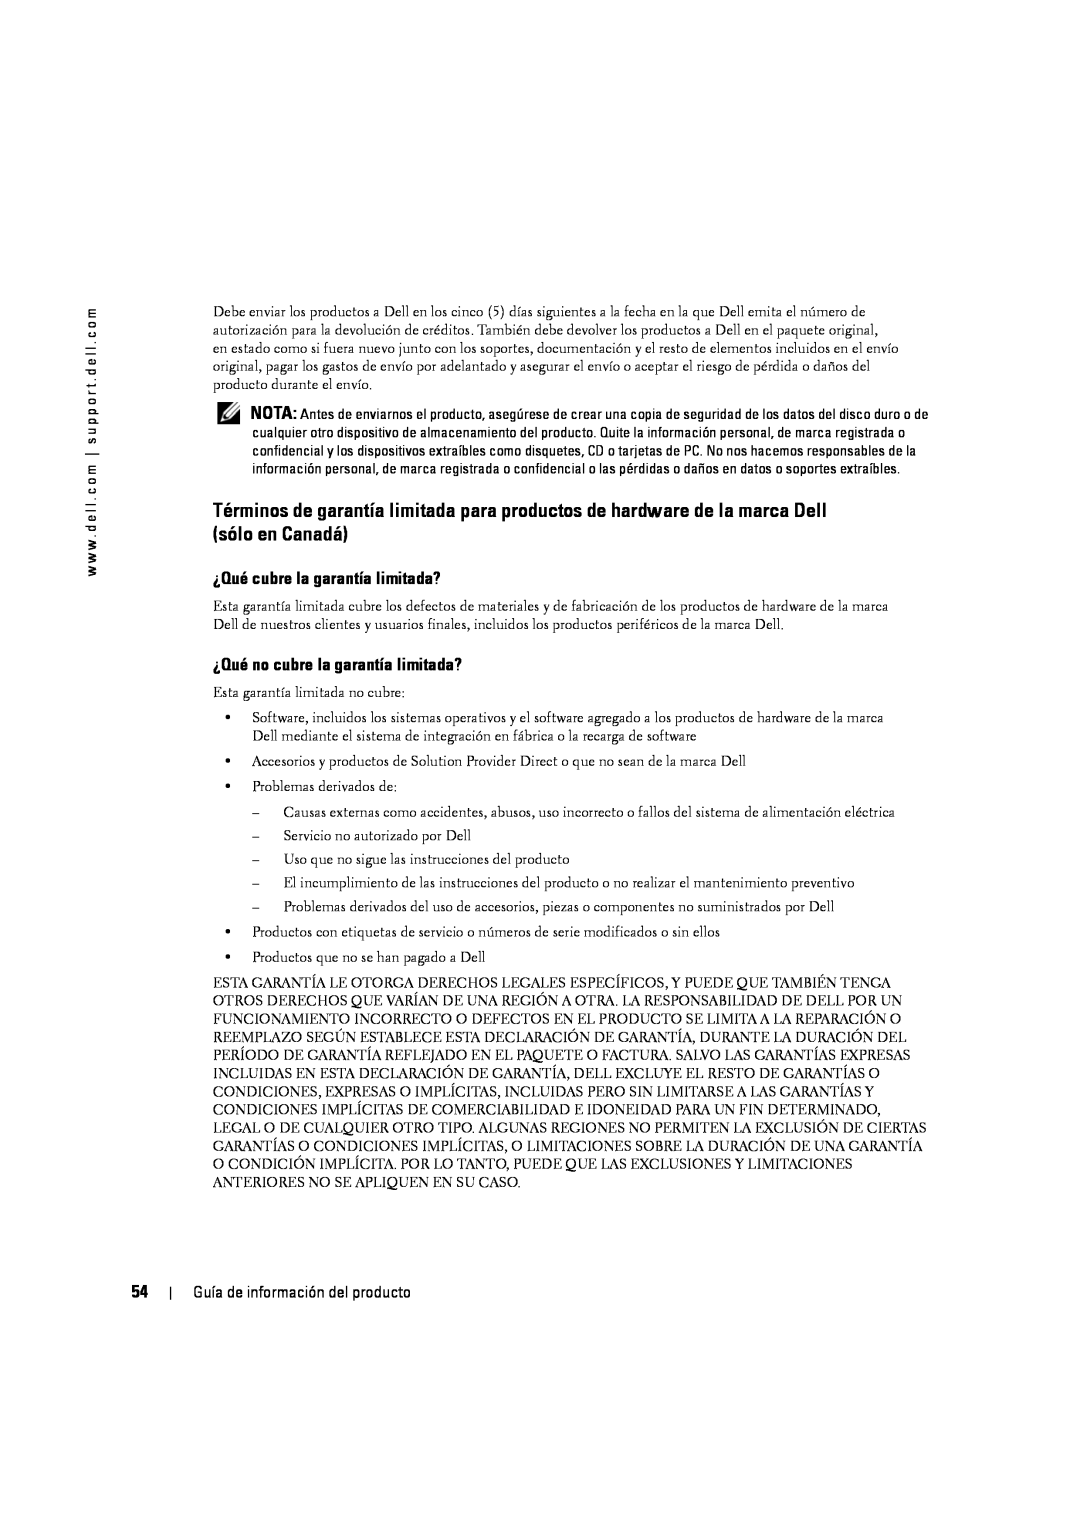 Dell W4201C manual ¿Qué cubre la garantía limitada?, ¿Qué no cubre la garantía limitada?, Guía de información del producto 